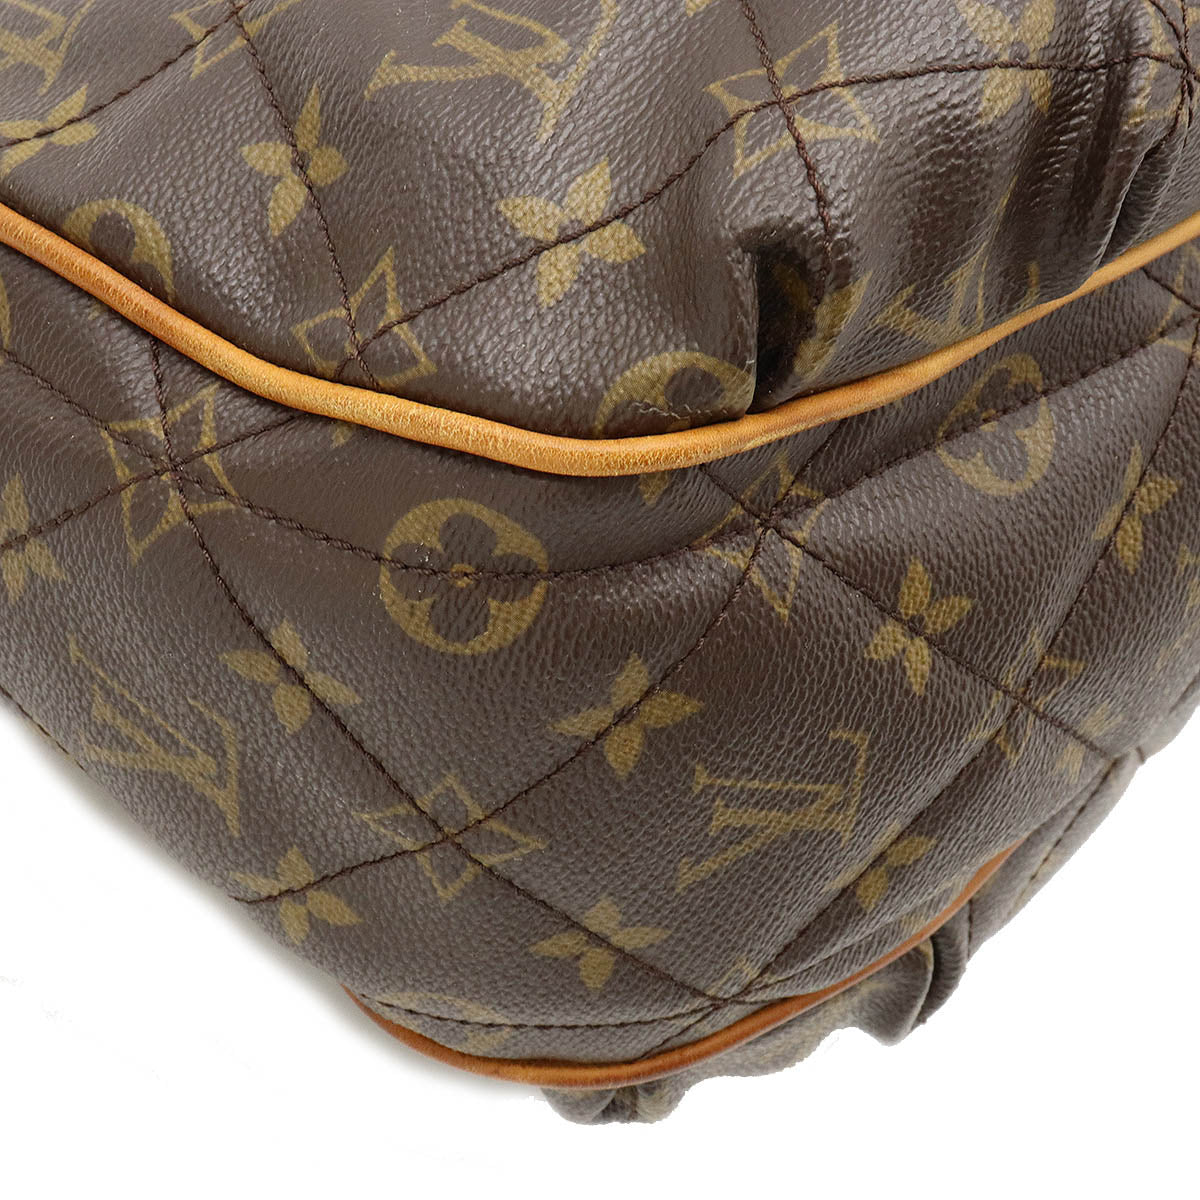 Louis Vuitton Etoile City Shoulder Bag M41453 – Timeless Vintage